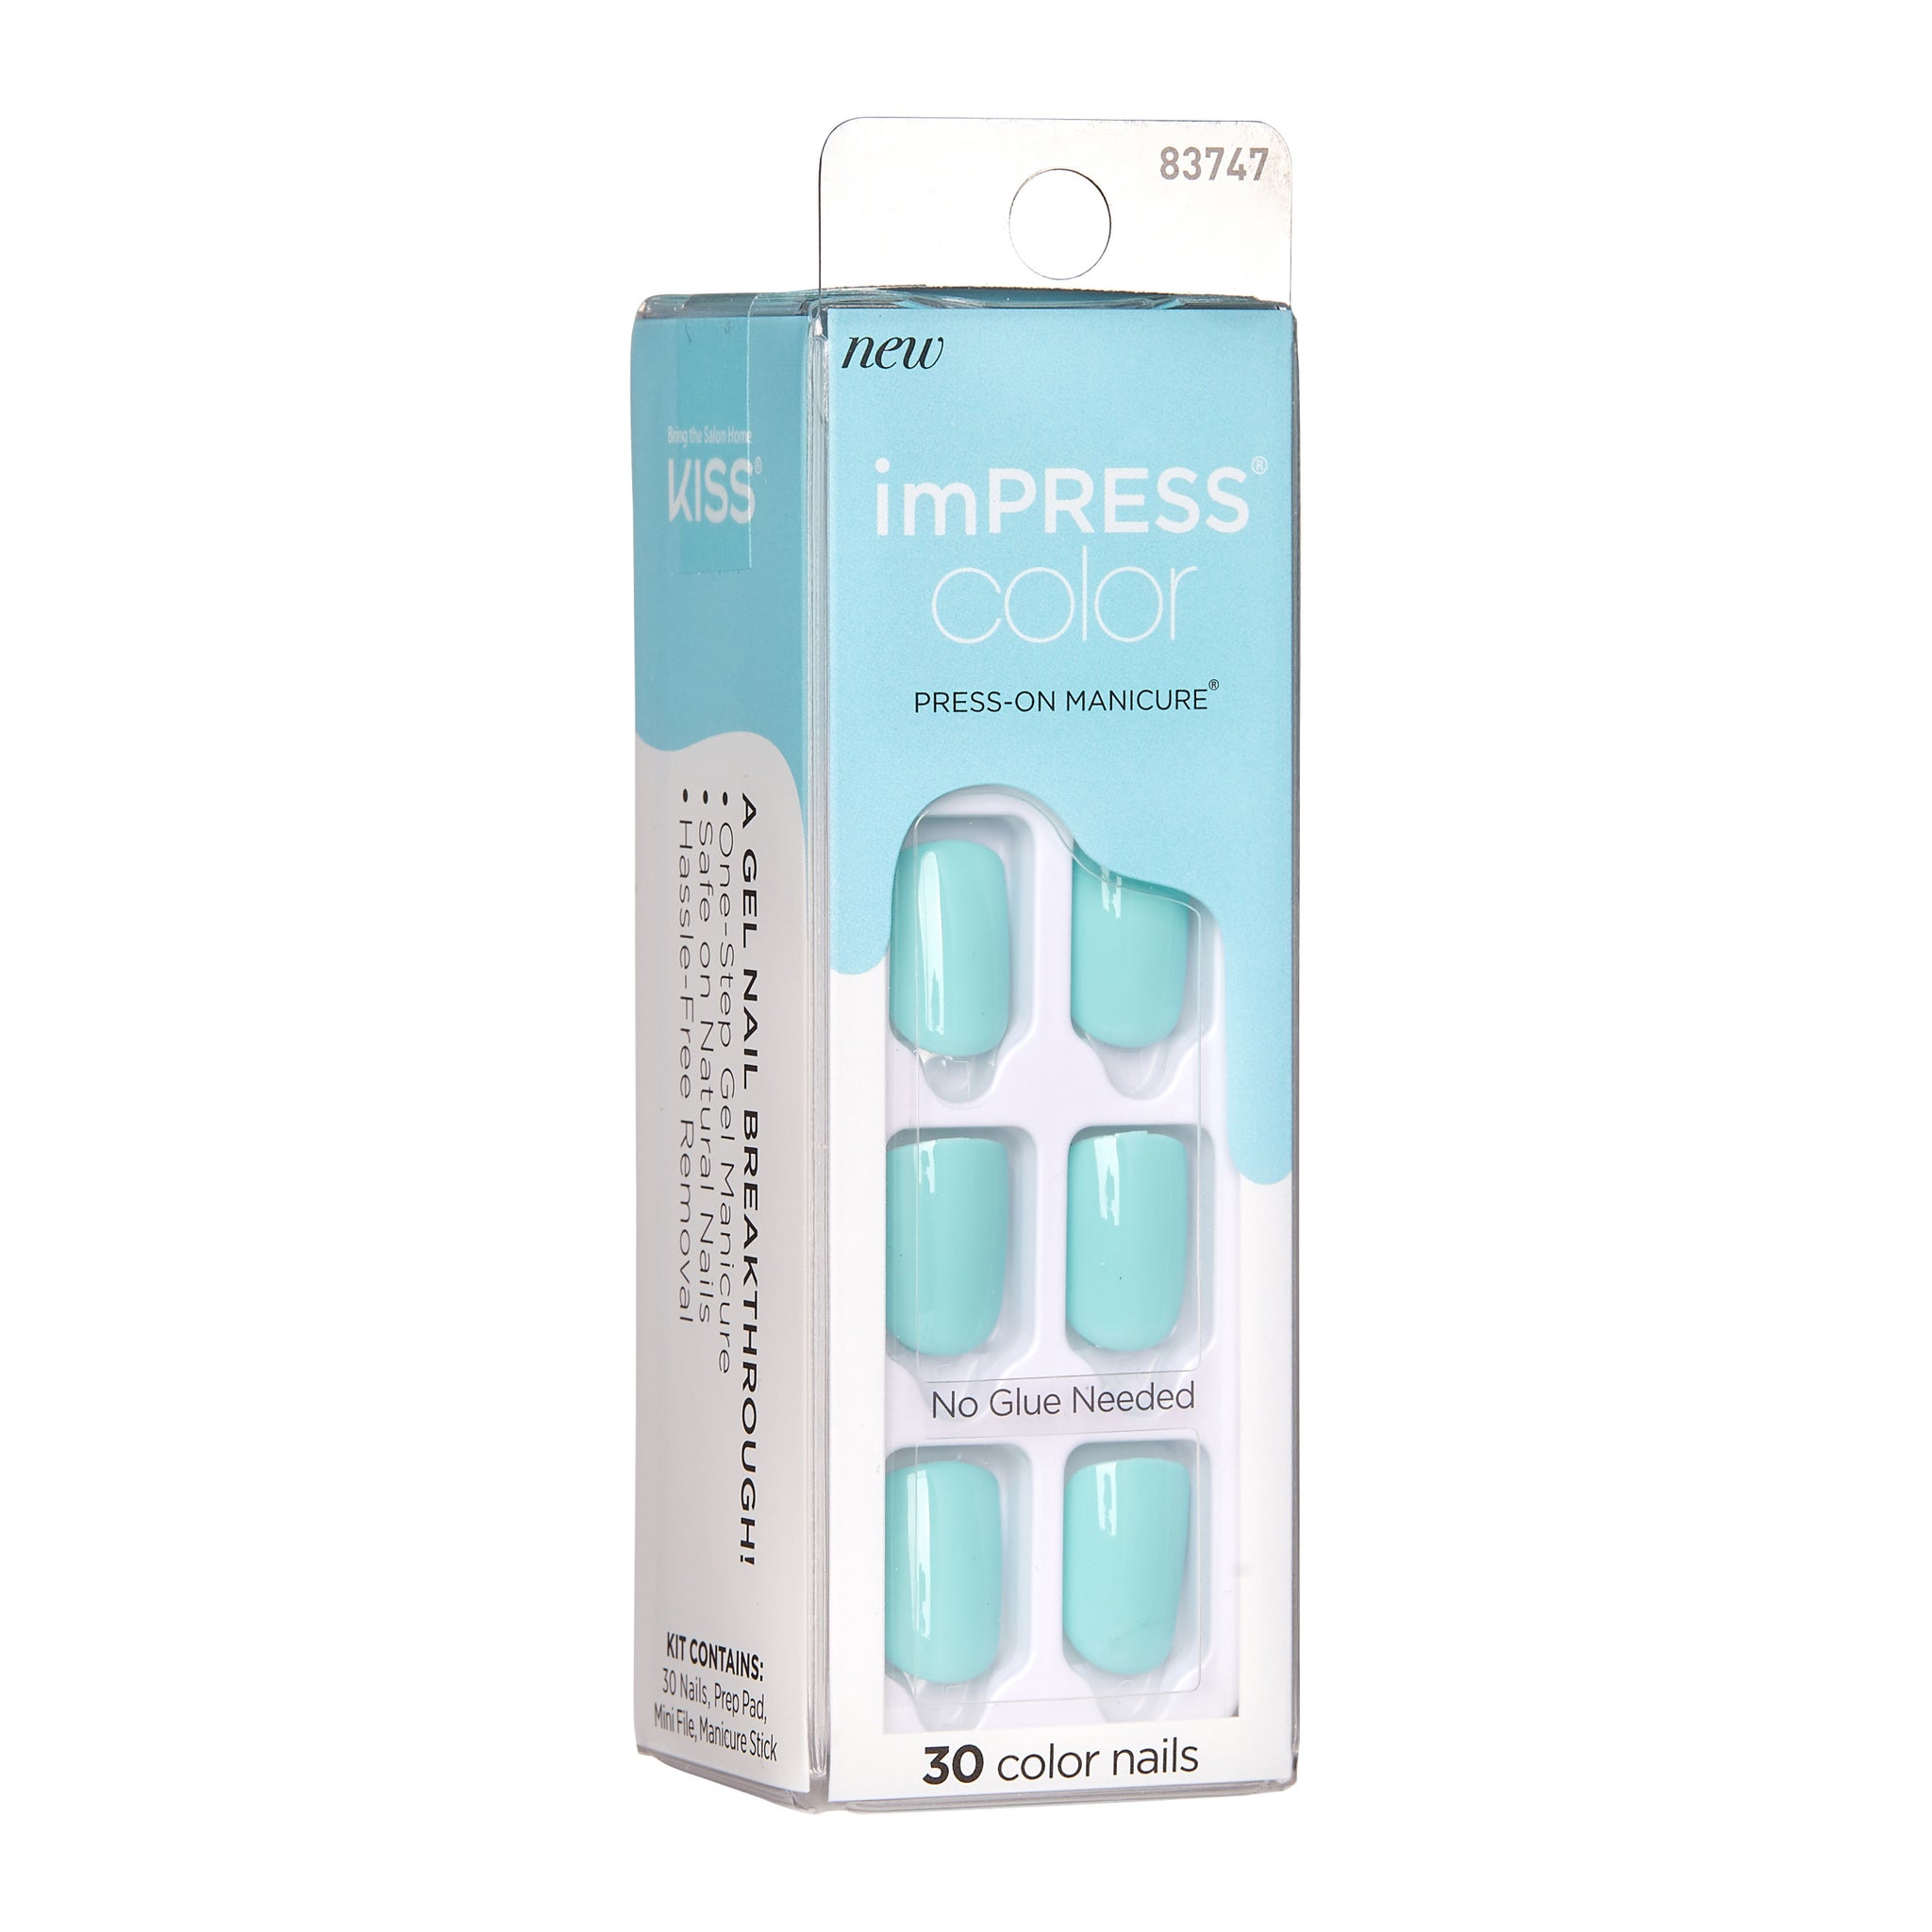 imPRESS Color Solid Short Press On Nails